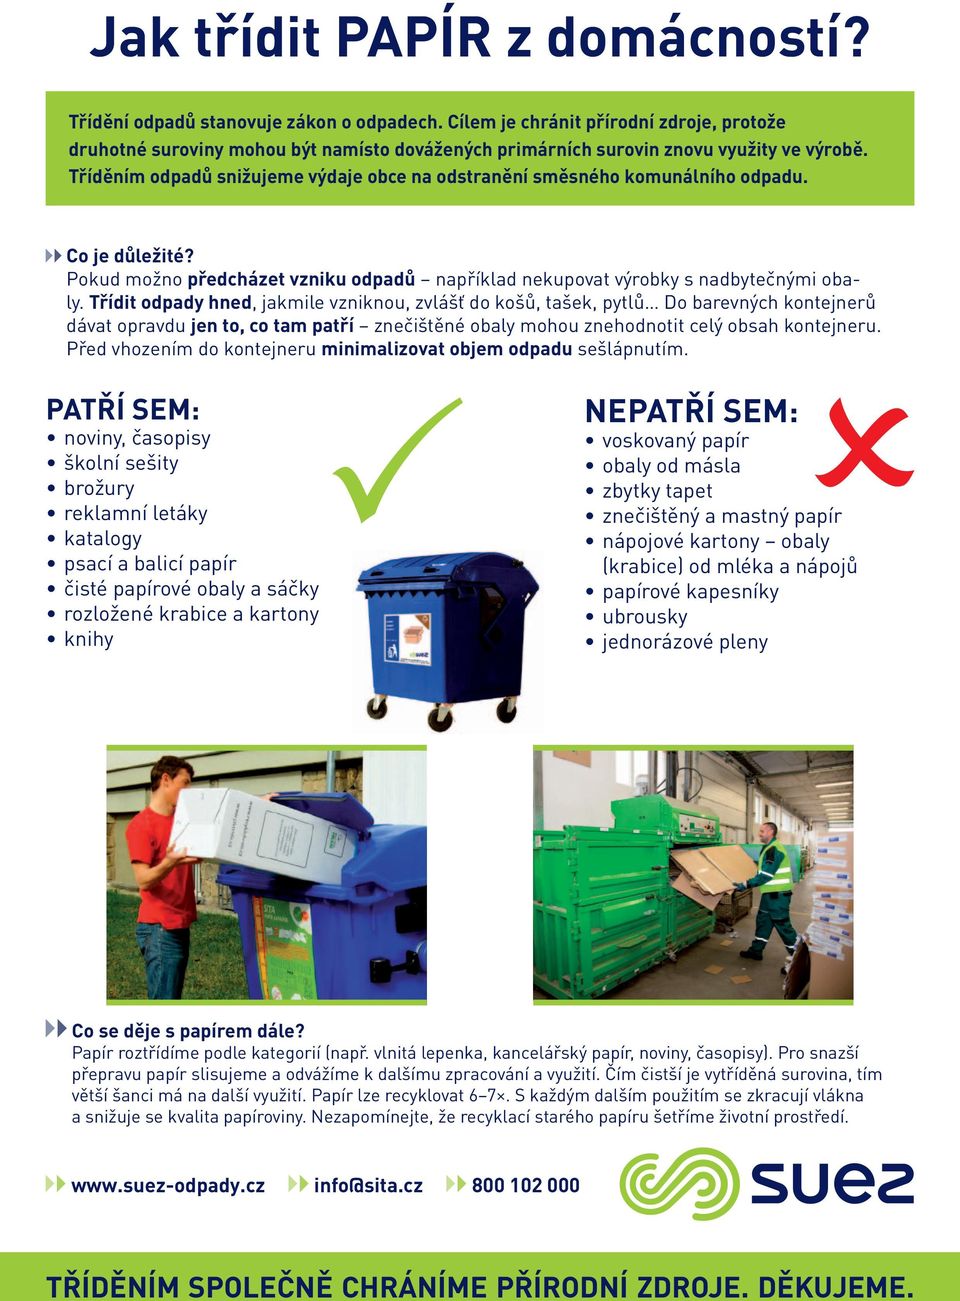 Jak třídit odpady z domácností? - PDF Free Download